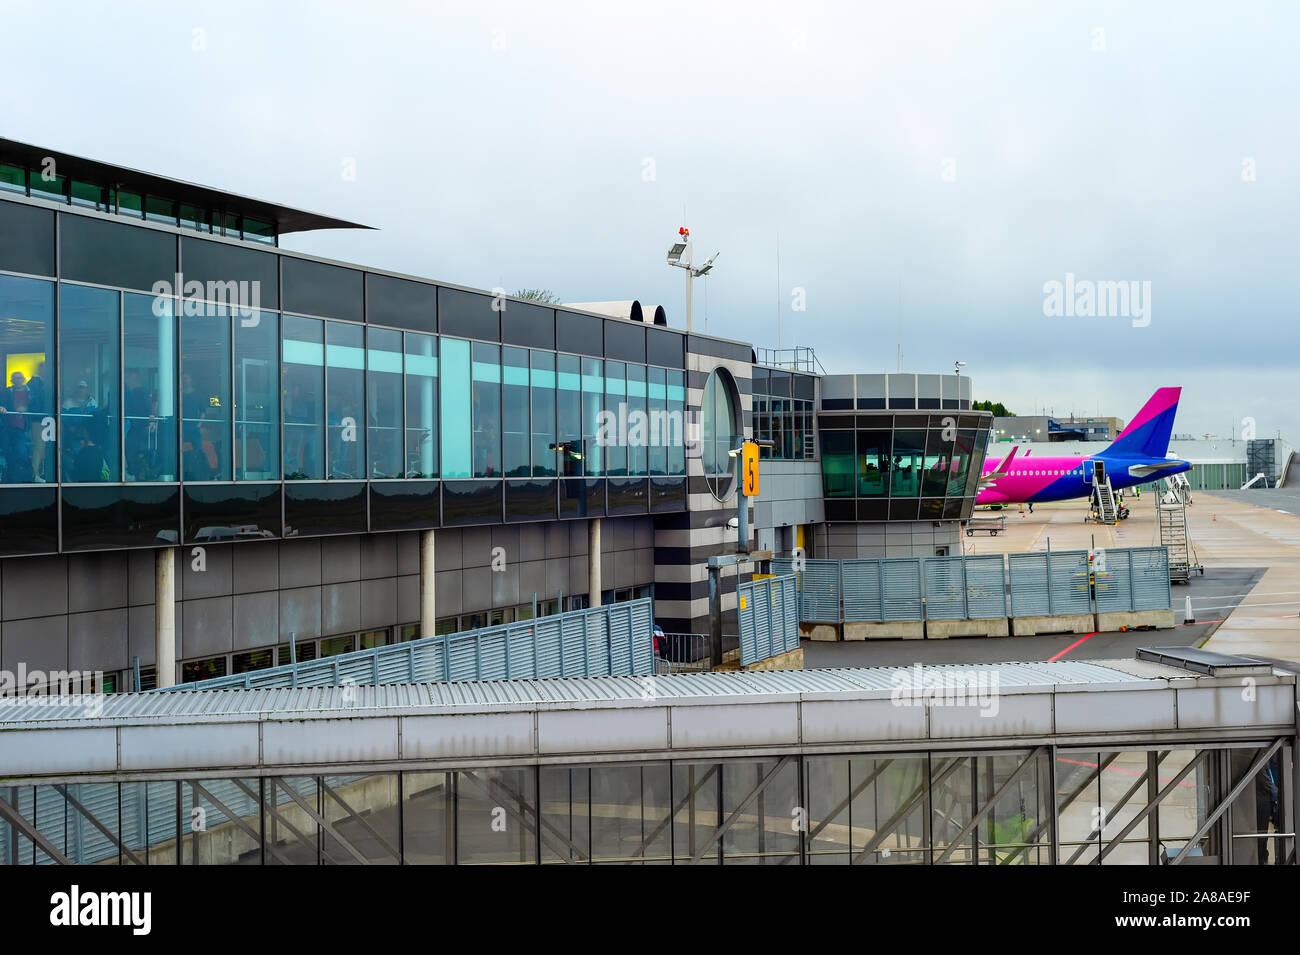 Fachada de cristal, terminal de avión en pista de aterrizaje en el aeropuerto internacional de Dortmund, nublado horizonte, Dortmund, Alemania Foto de stock